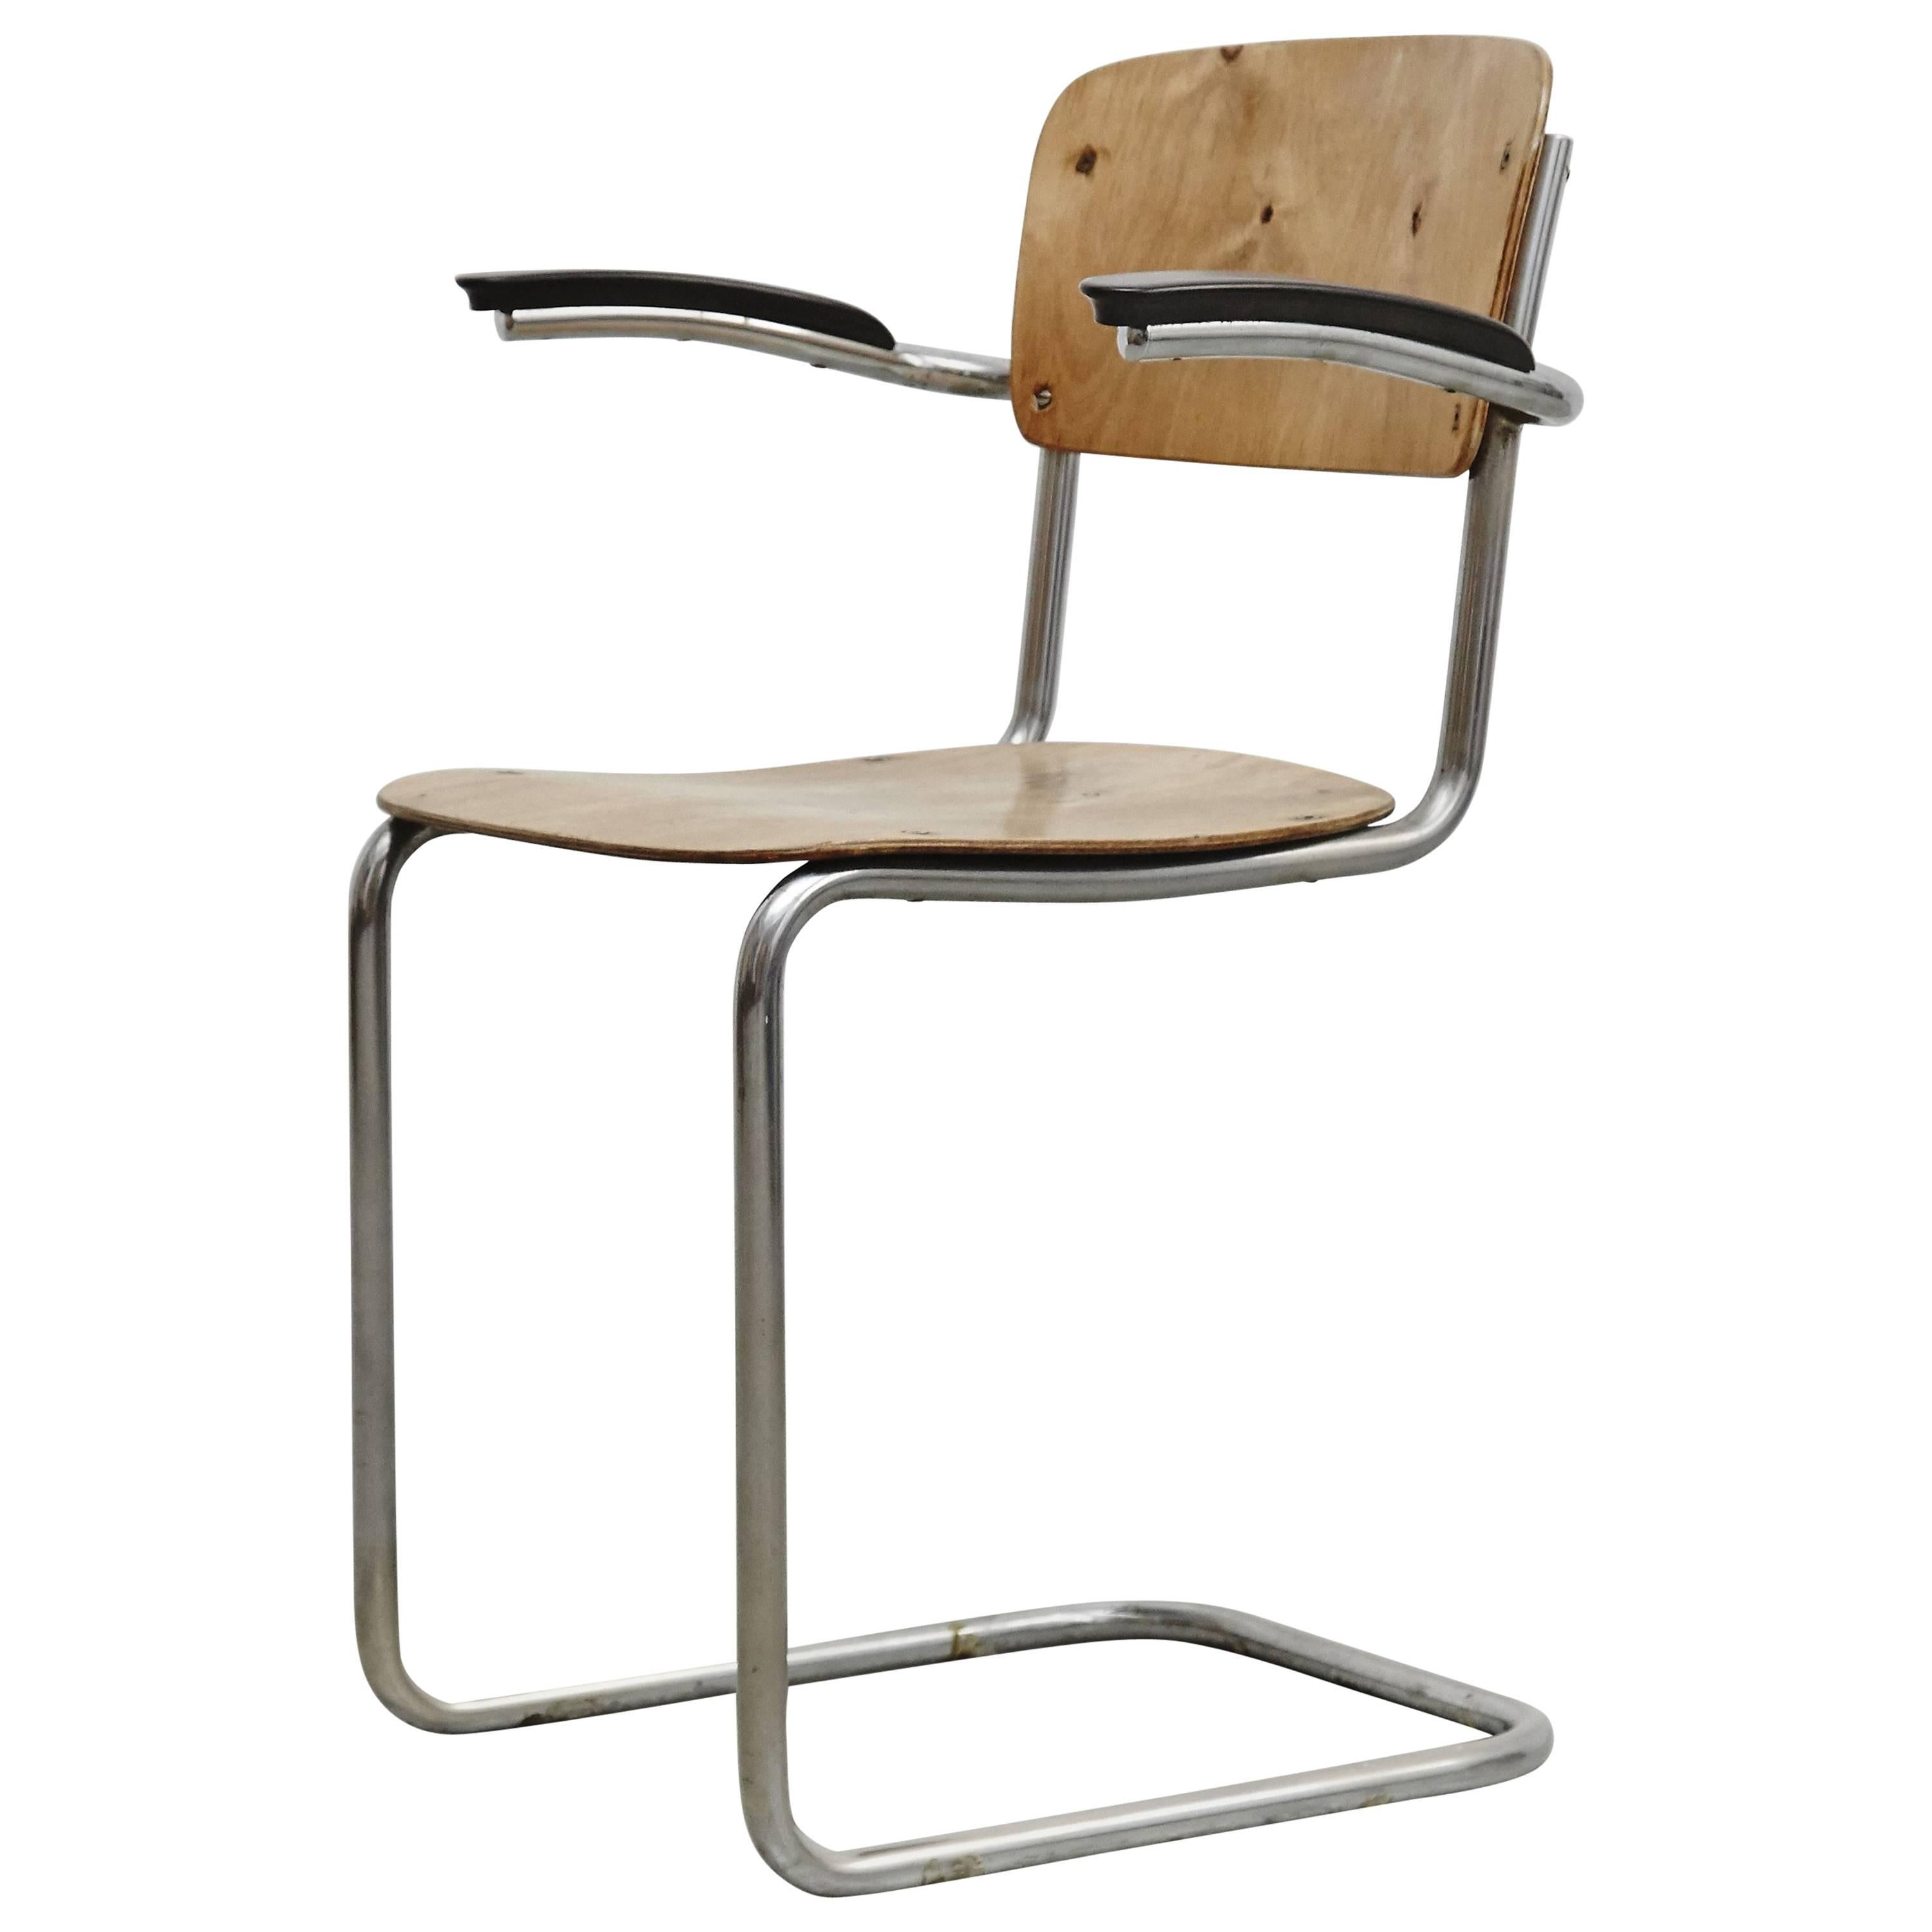 Bauhaus Chair, circa 1930